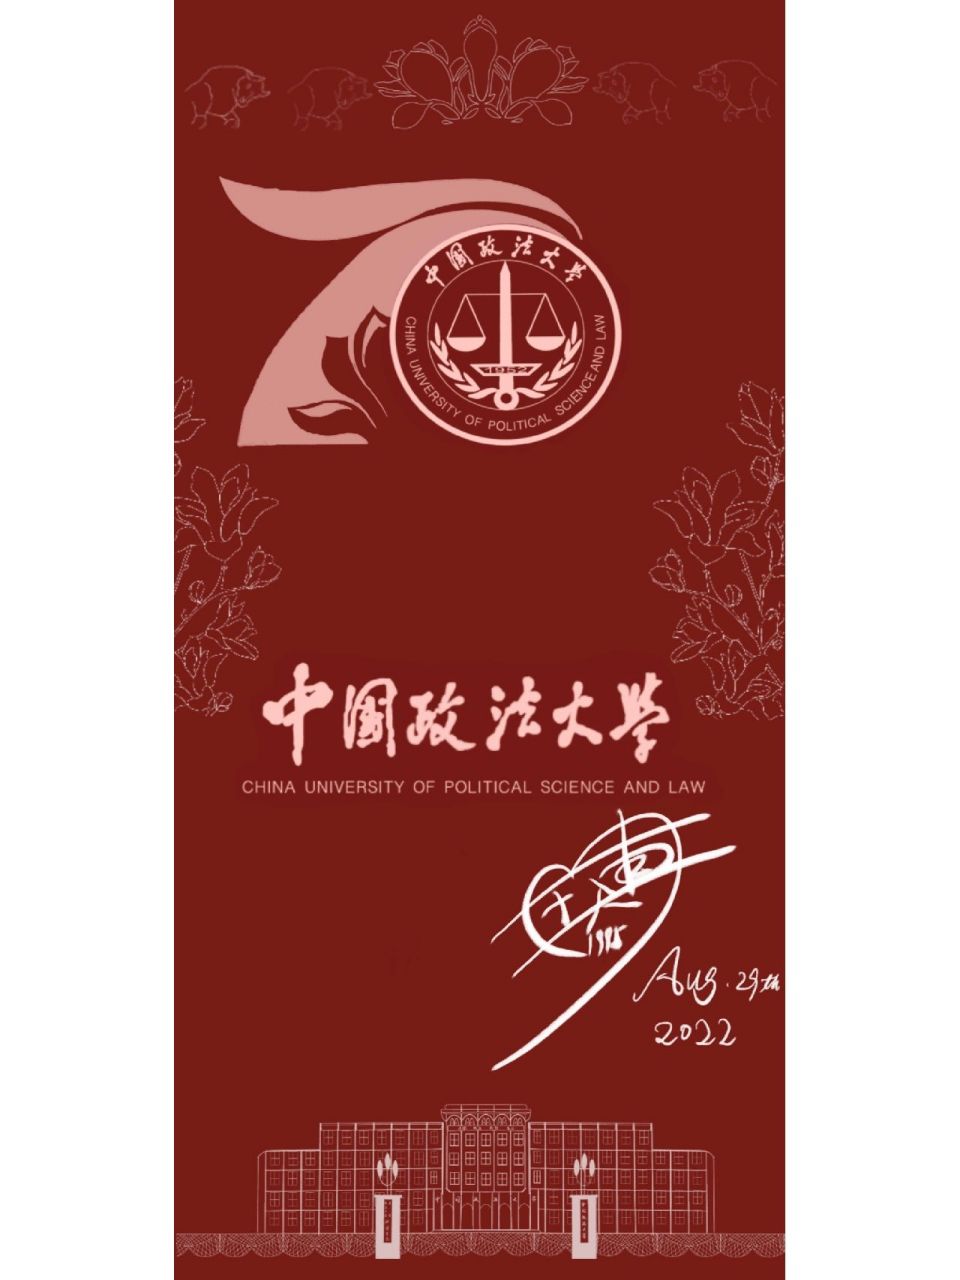 中国政法大学校徽壁纸图片